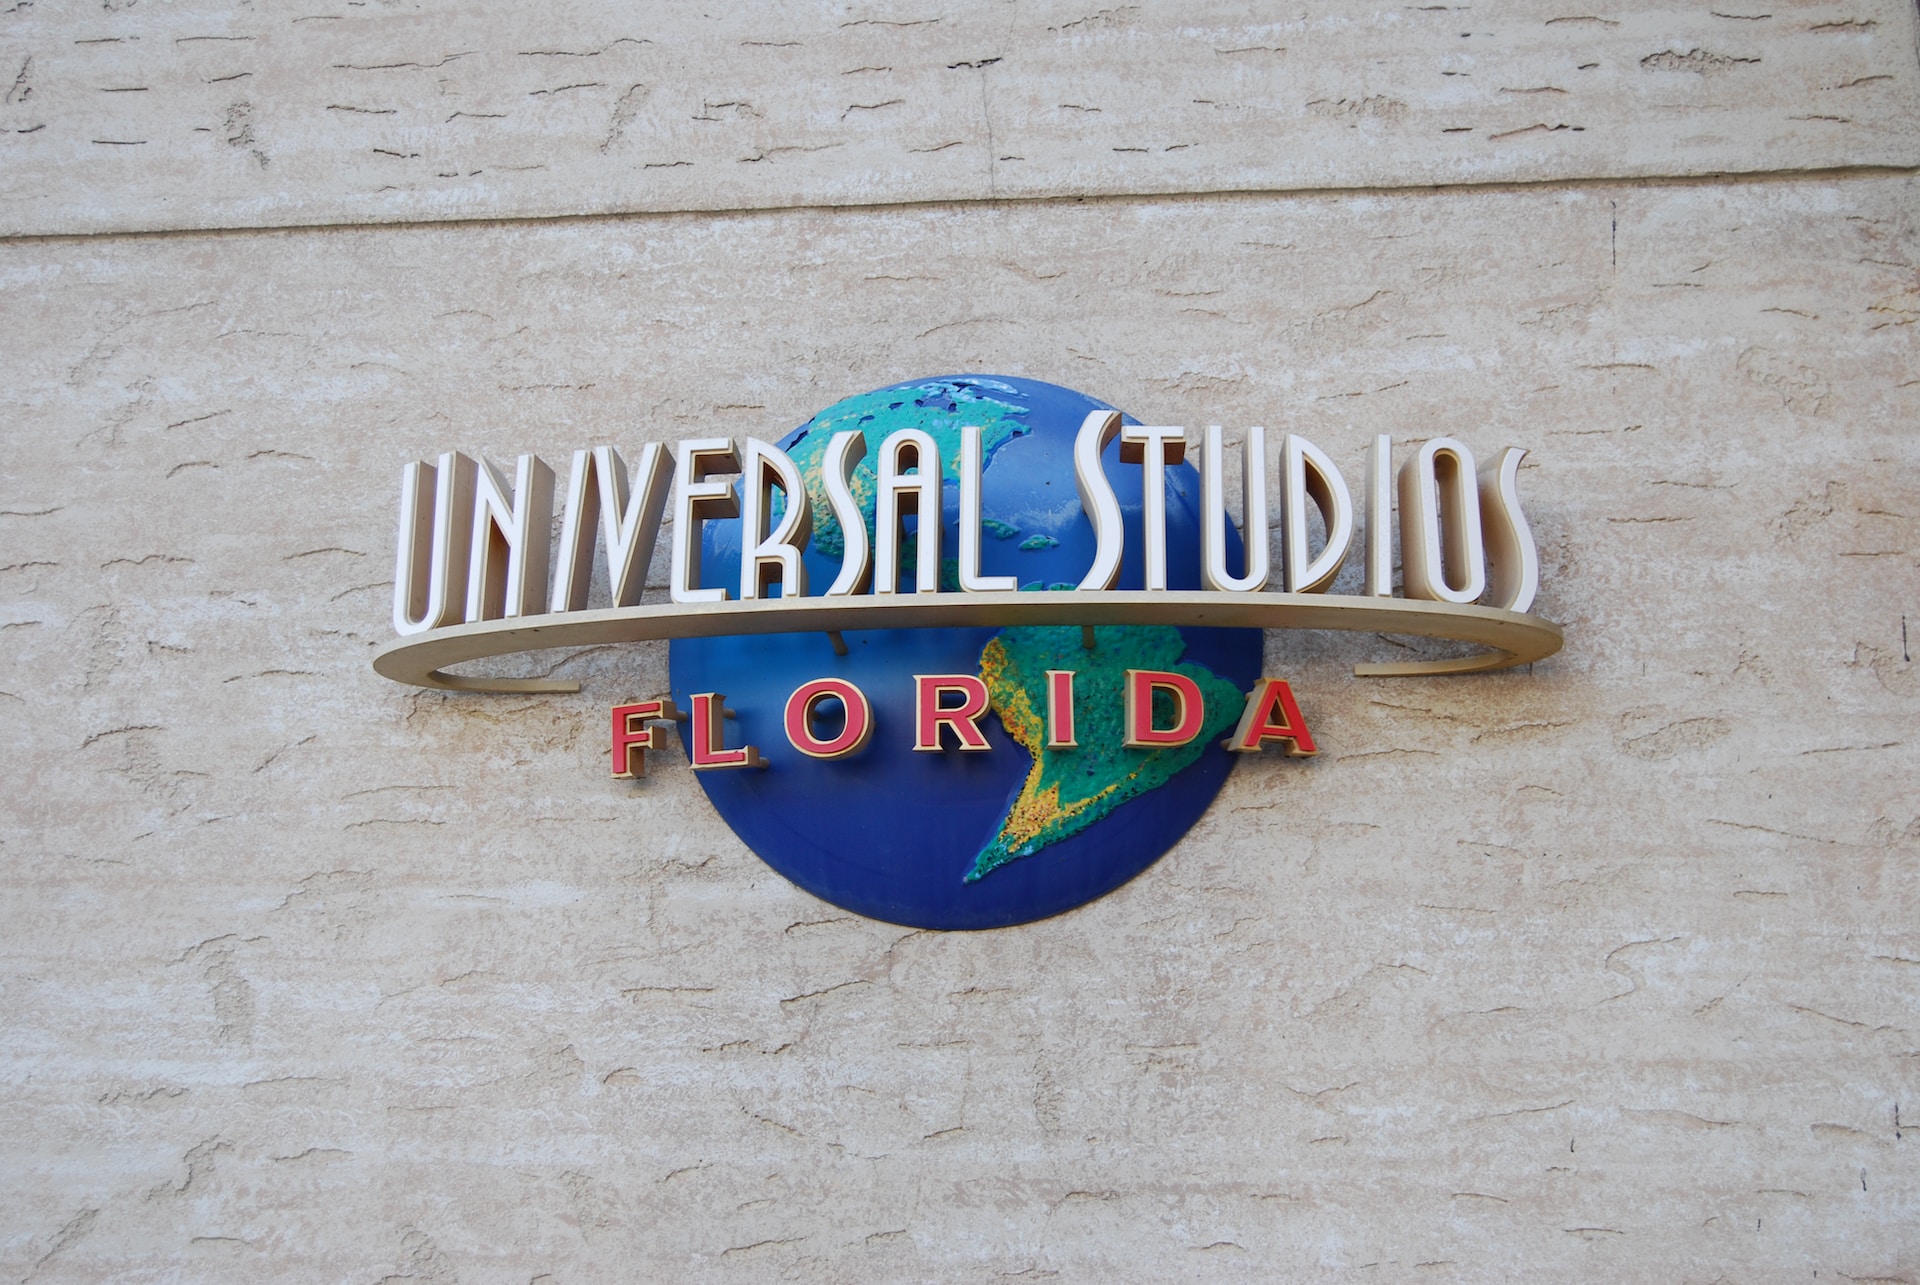 Universal Studios Orlando Seasonal Pass Guide